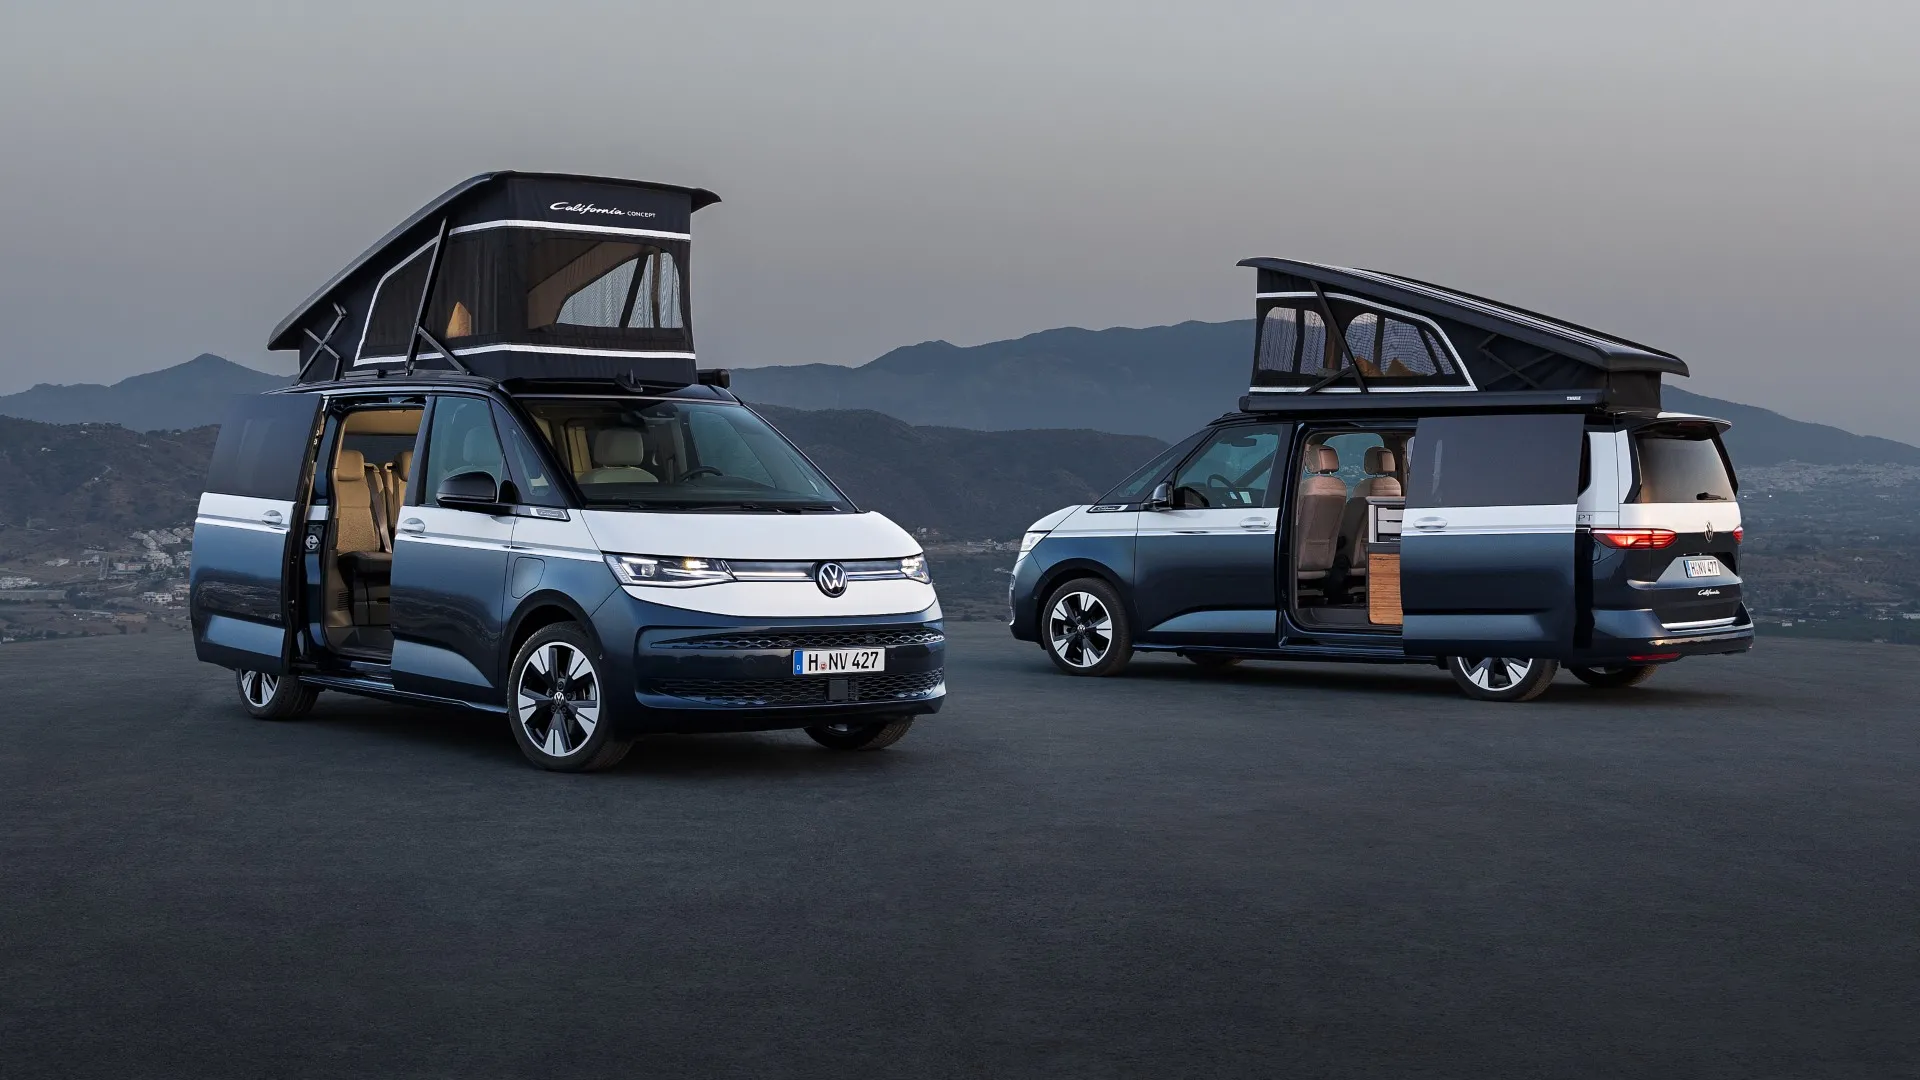 La Volkswagen California Concept nos muestra un adelanto del modelo de producción